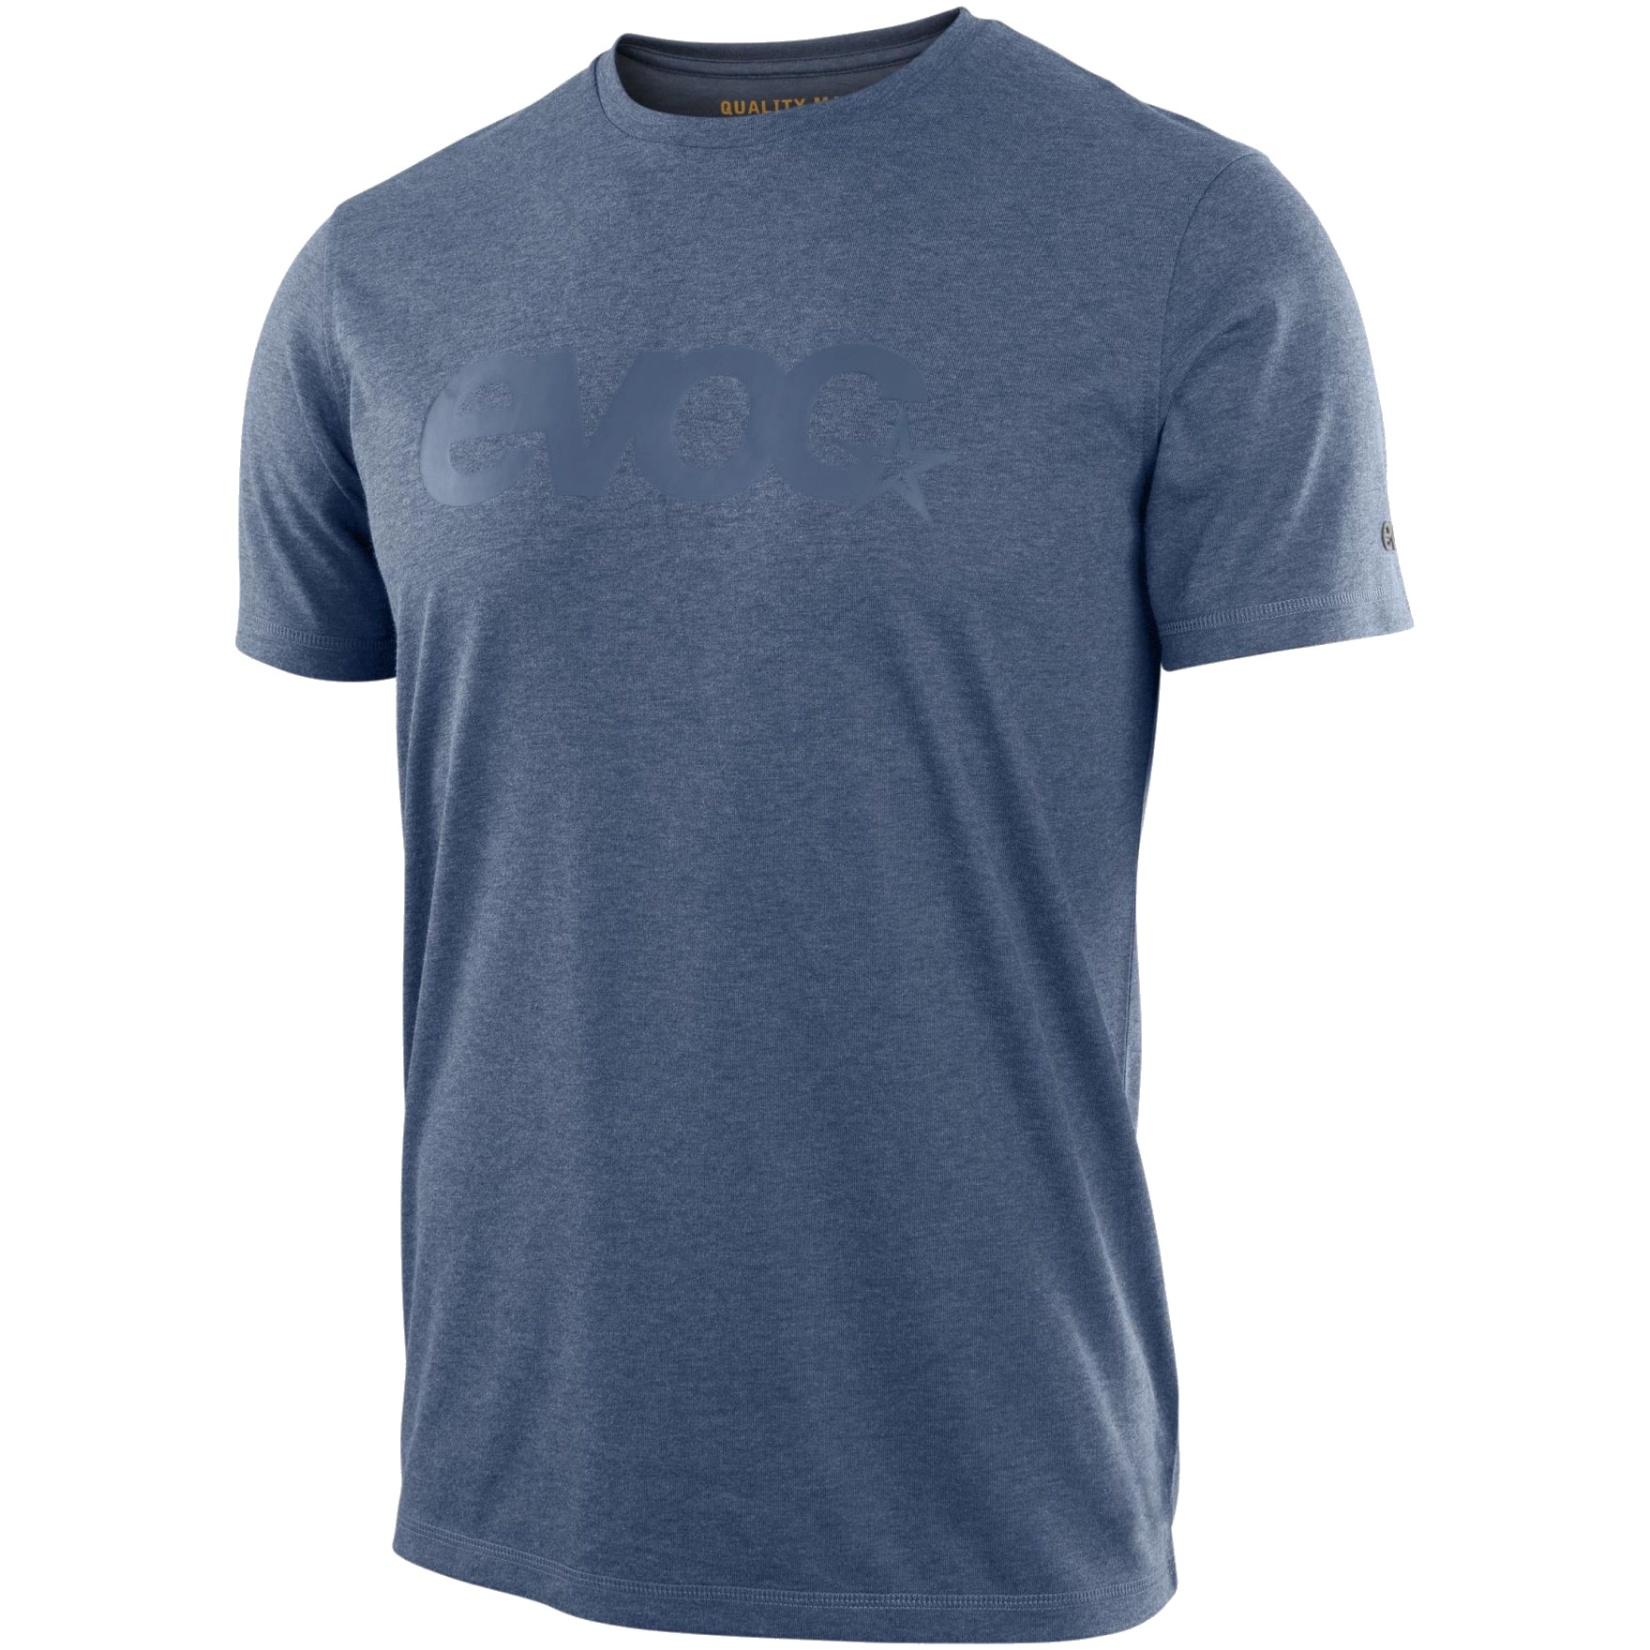 Produktbild von EVOC T-Shirt Dry - Denim